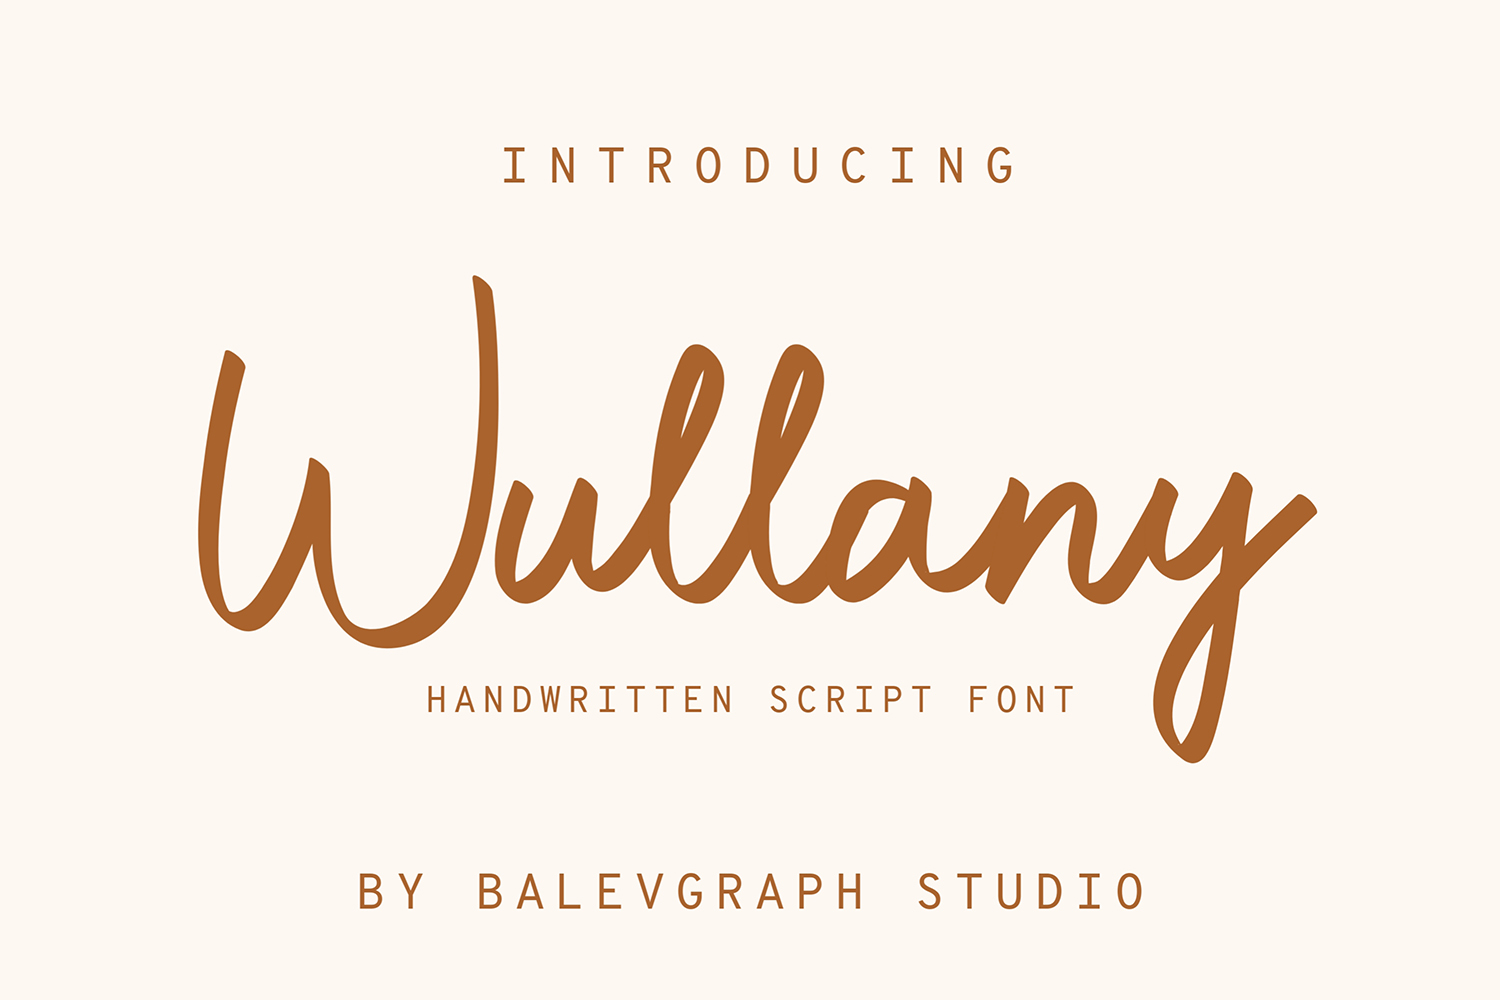 Wullany Free Font